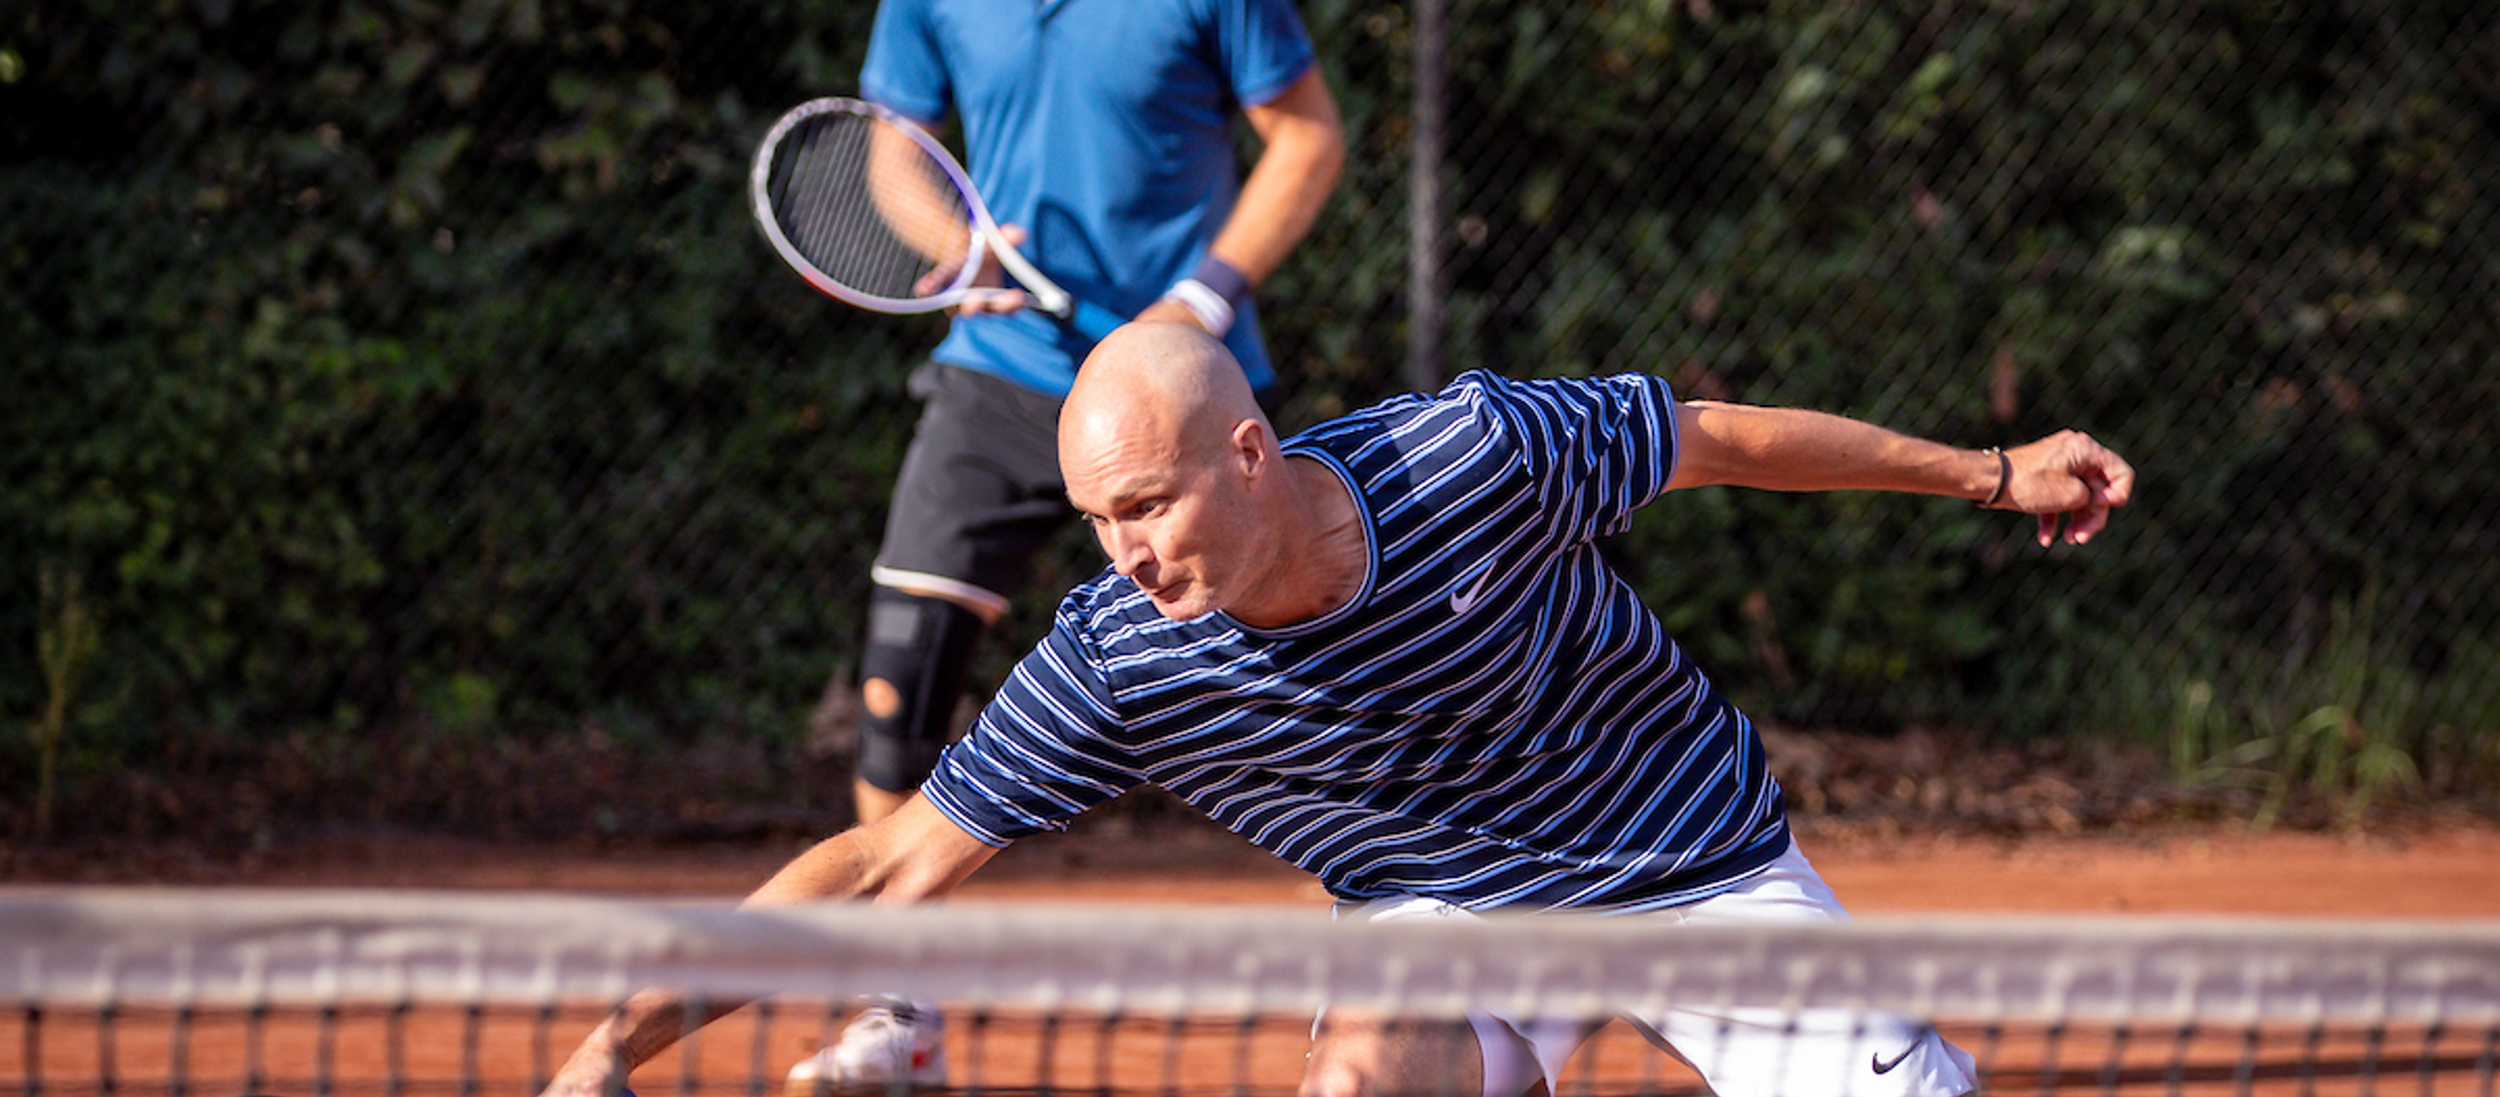 Man in actie tijdens tenniswedstrijd